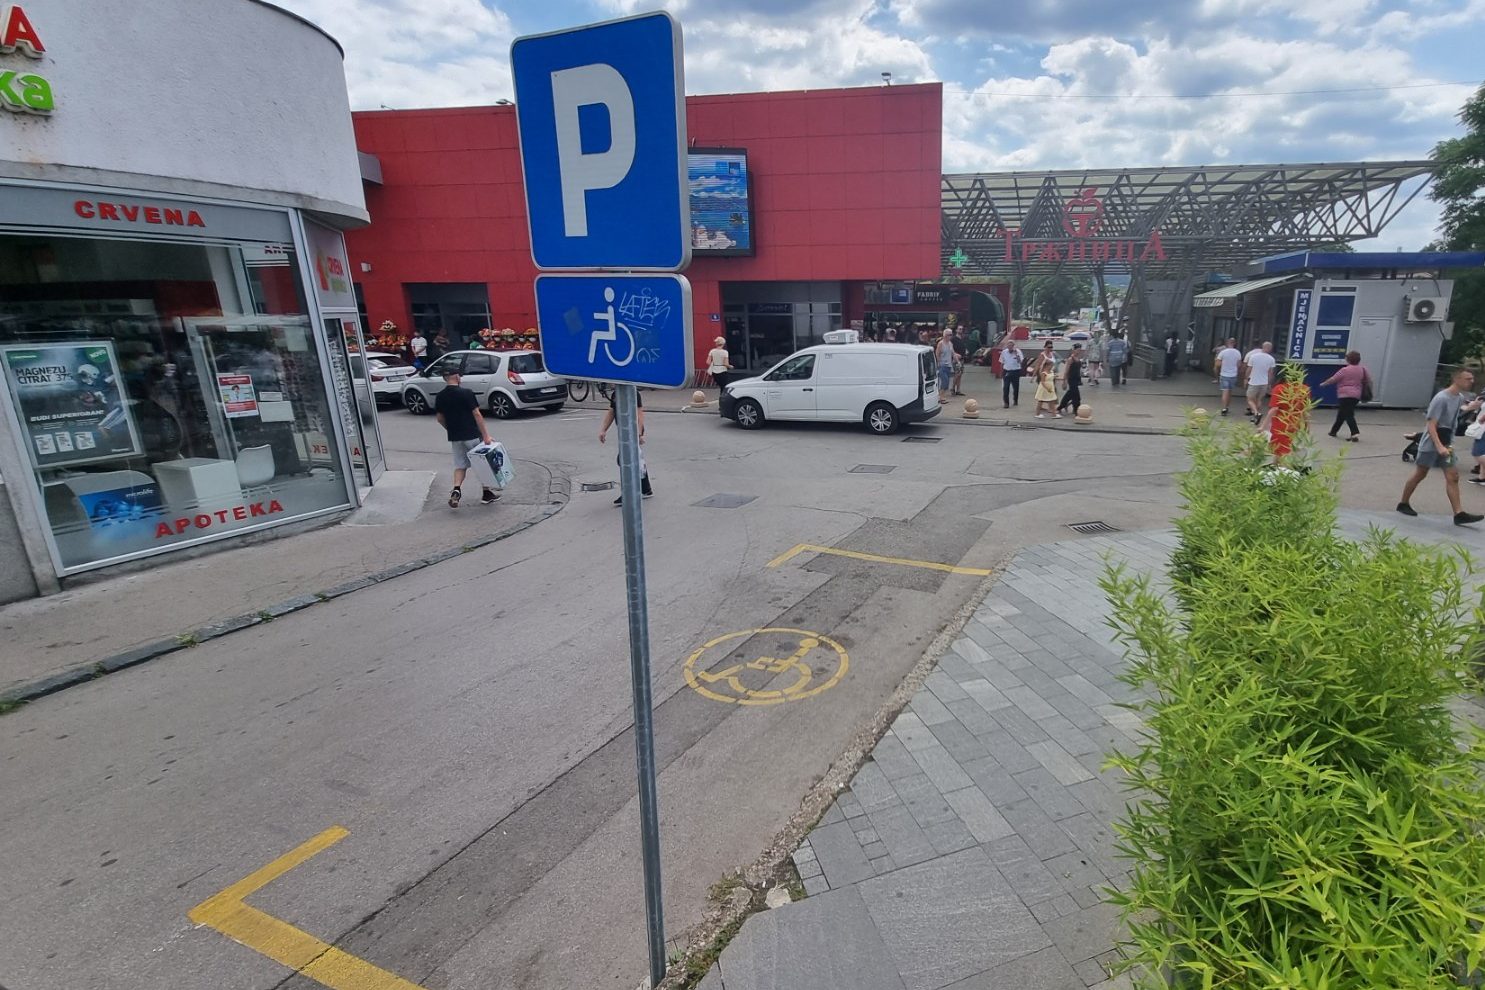 Evo koliko je ljudi kažnjeno za parkiranje na mjesto za lica s invaliditetom